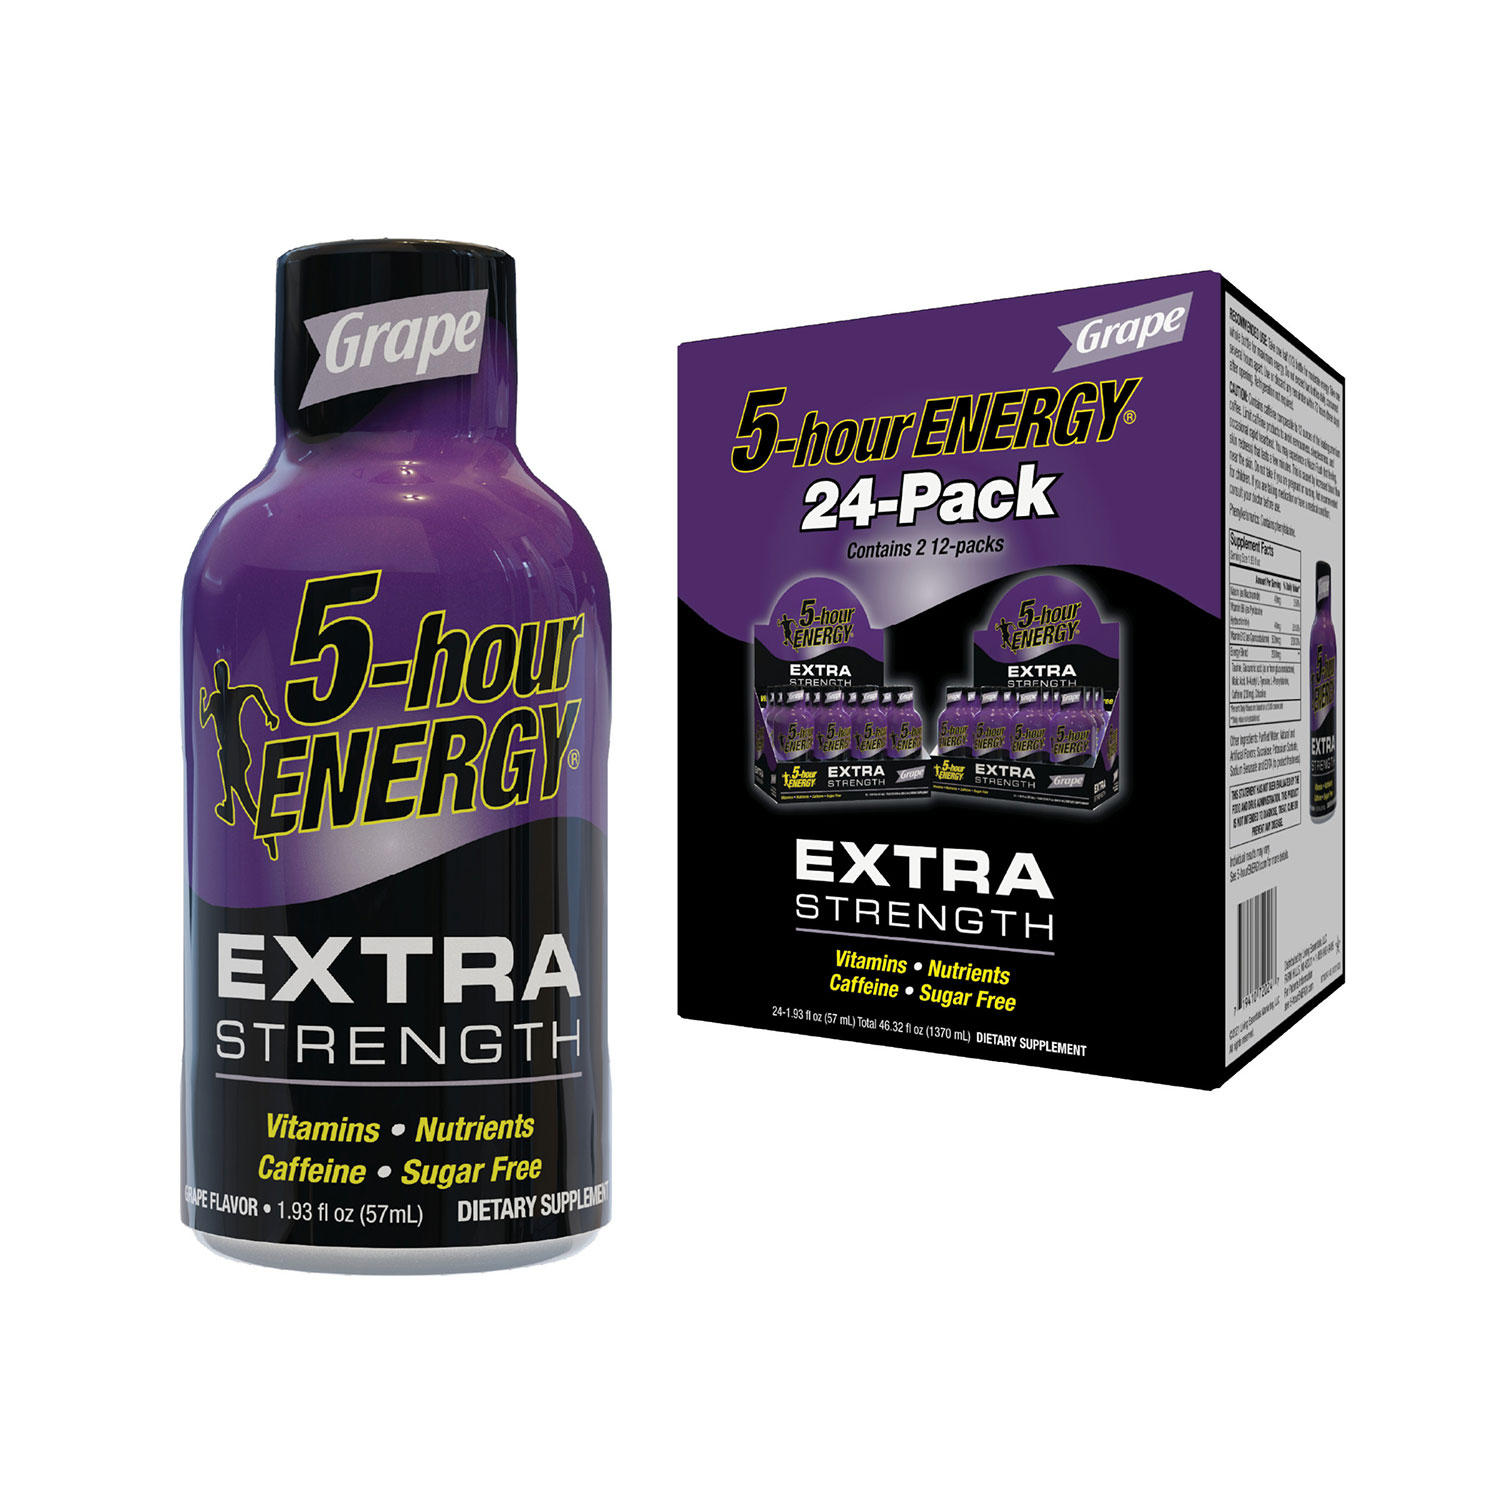 5-hour ENERGY® Shot, Extra Strength, Grape, 1.93 oz, 24 Count - 719410720247